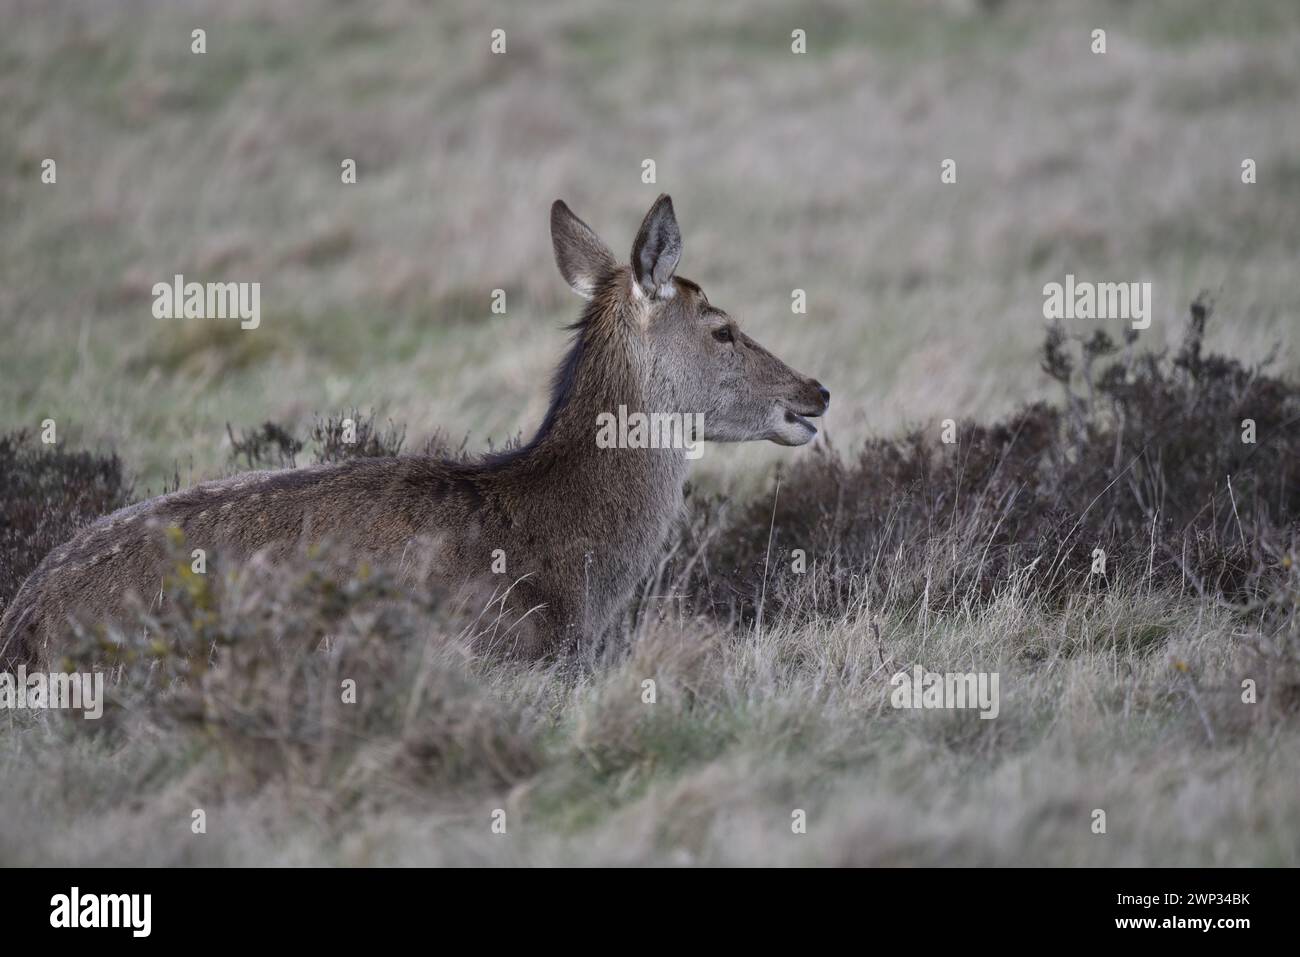 In basso a sinistra in primo piano immagine di un cervo rosso (Cervus elaphus) sdraiato in erba a destra con bocca aperta e orecchie in alto, ripresa nel Regno Unito in inverno Foto Stock